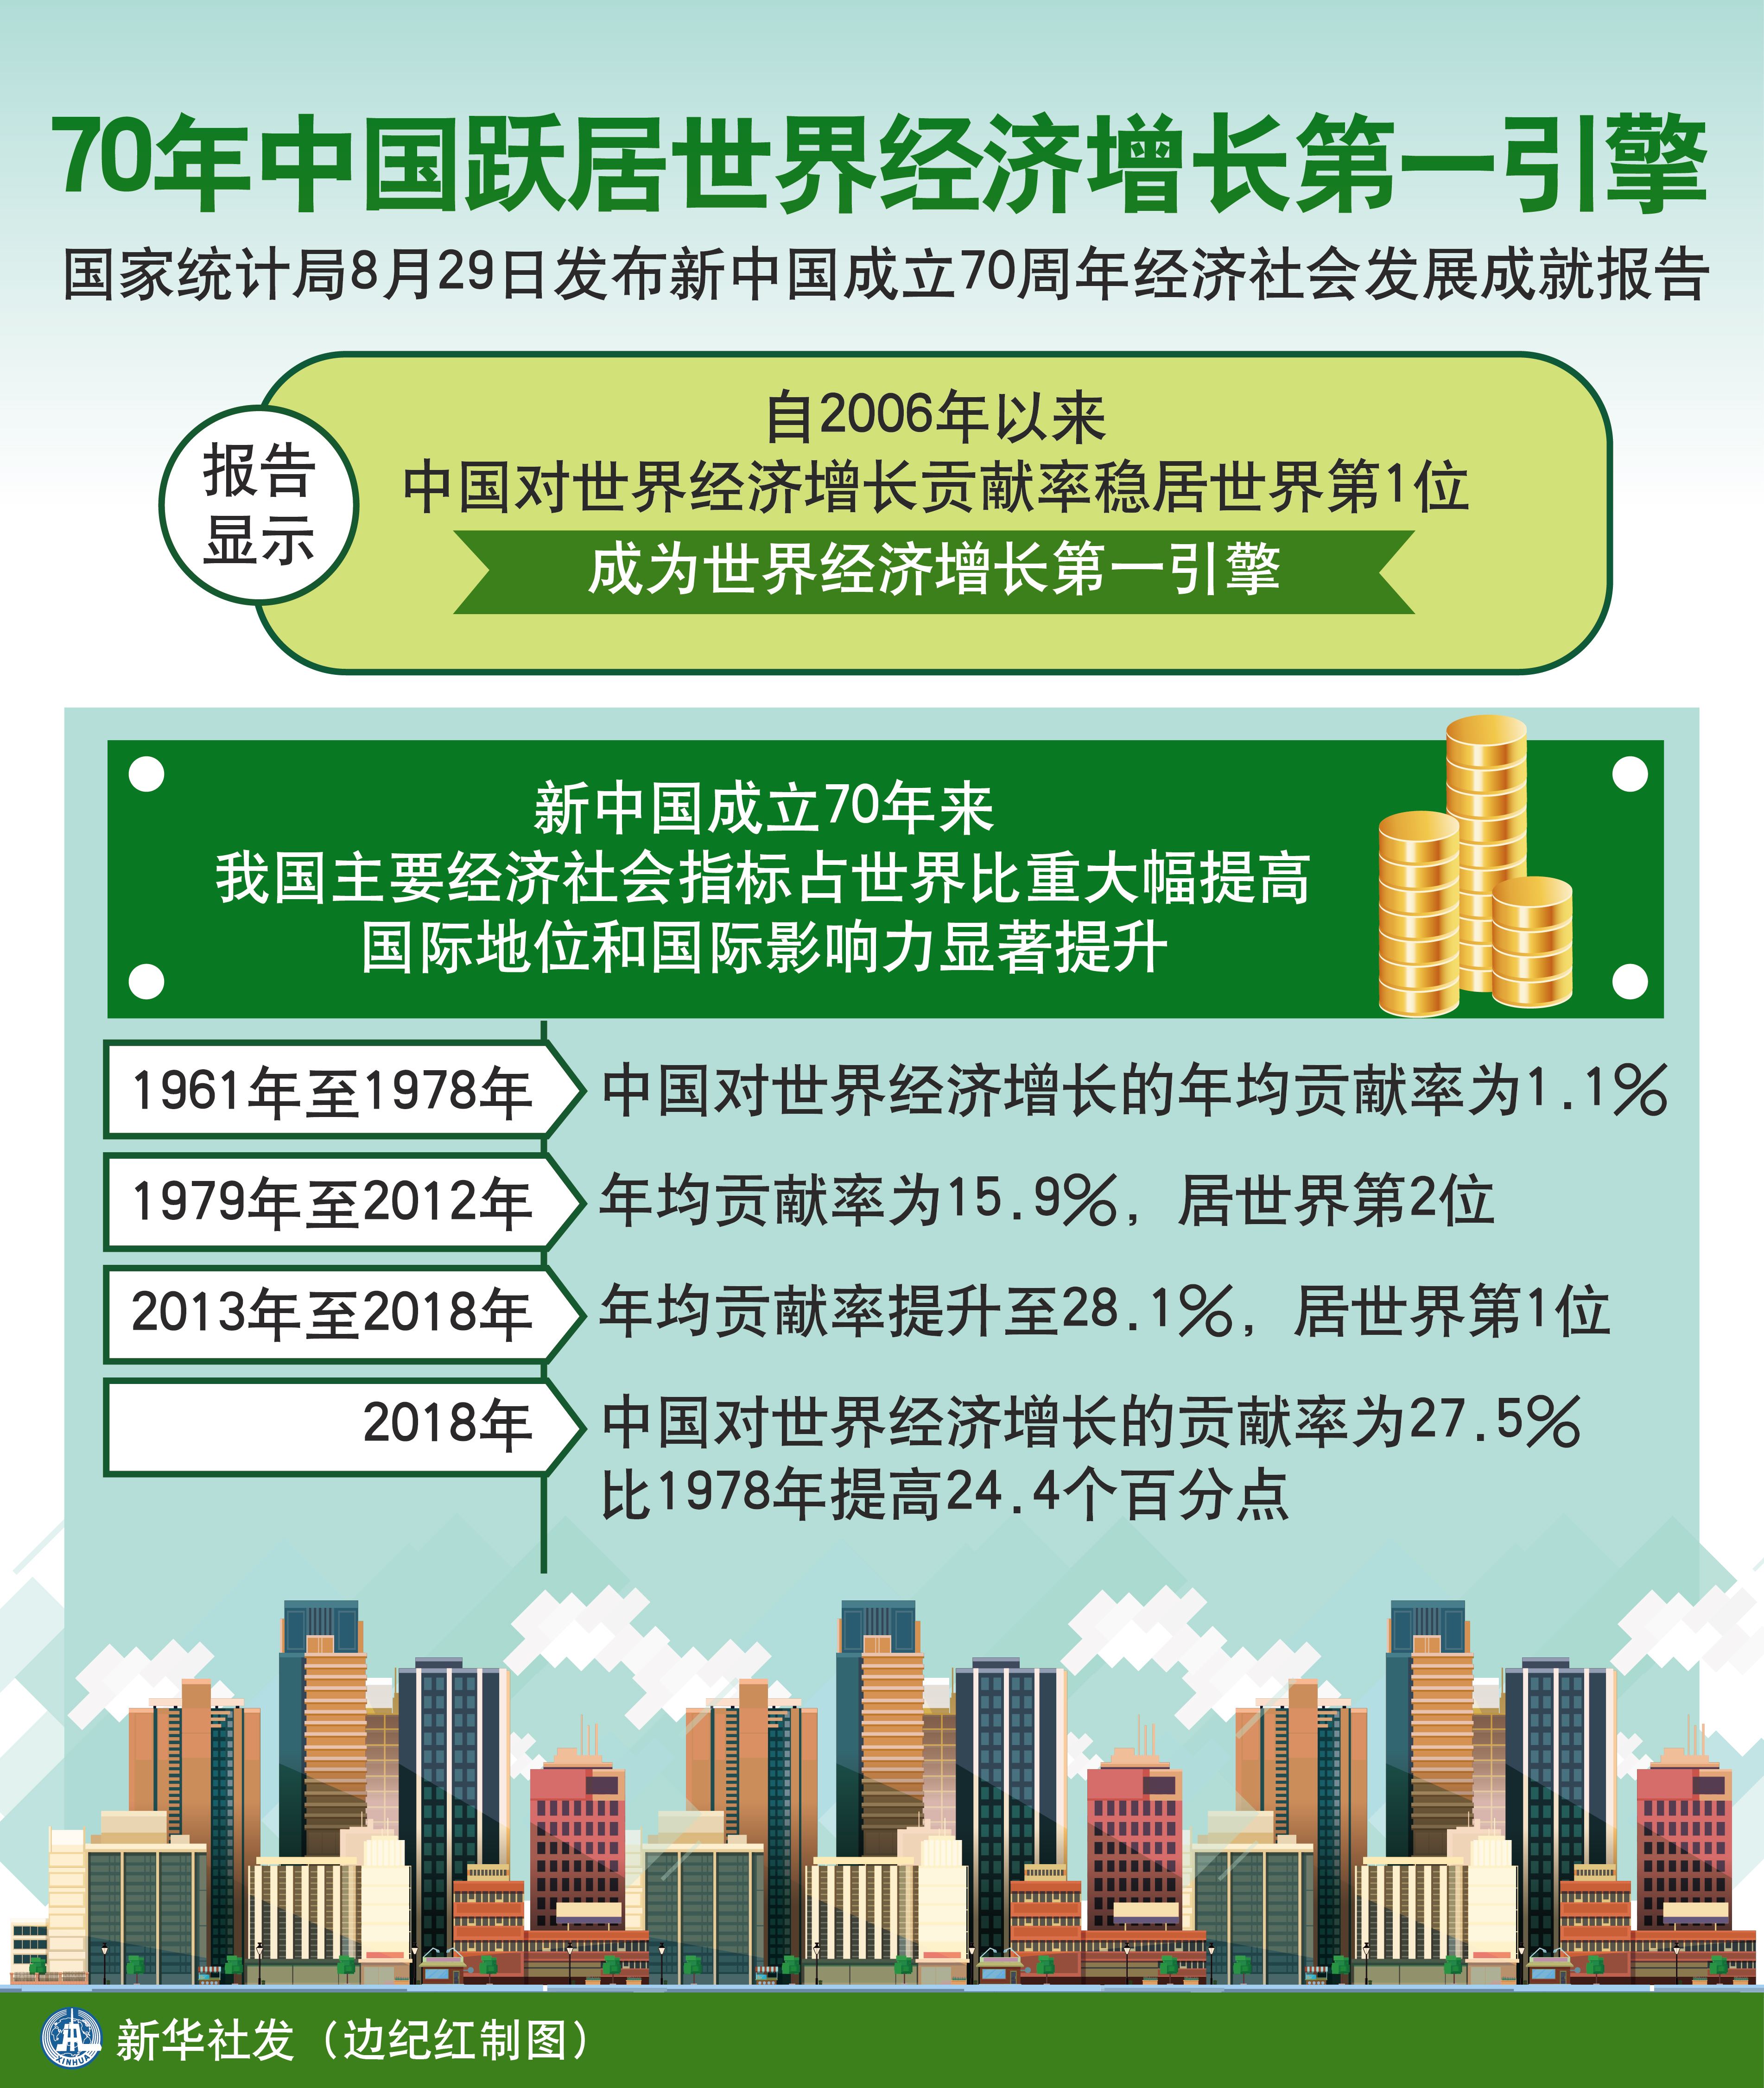 (图表)「壮丽70年·数据看成就」70年中国跃居世界经济增长第一引擎